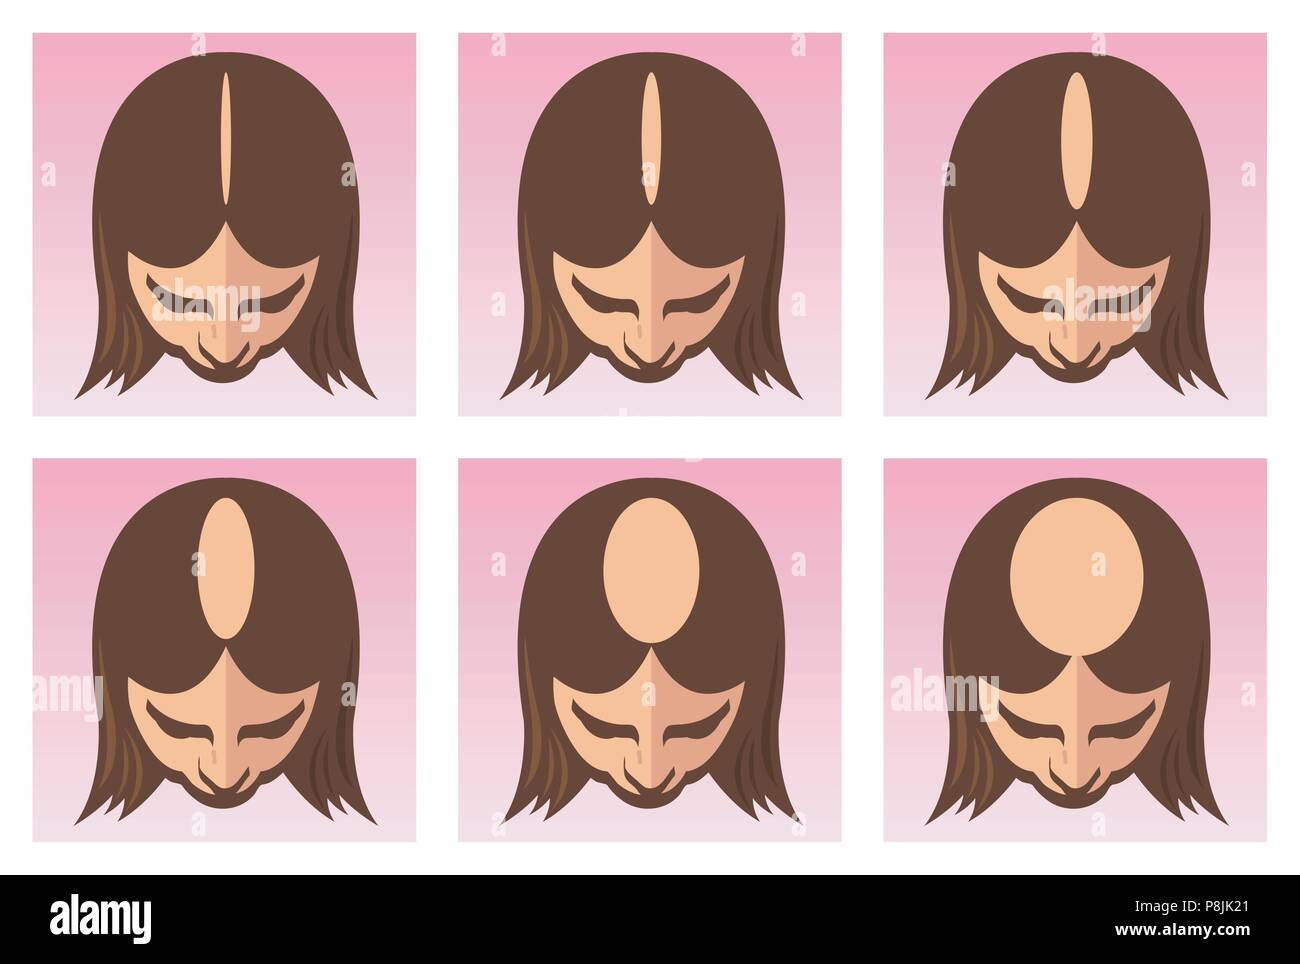 Ein Vektor medizinischen Abbildung der Stufen der weiblichen Alopezie oder Haarausfall. Stock Vektor